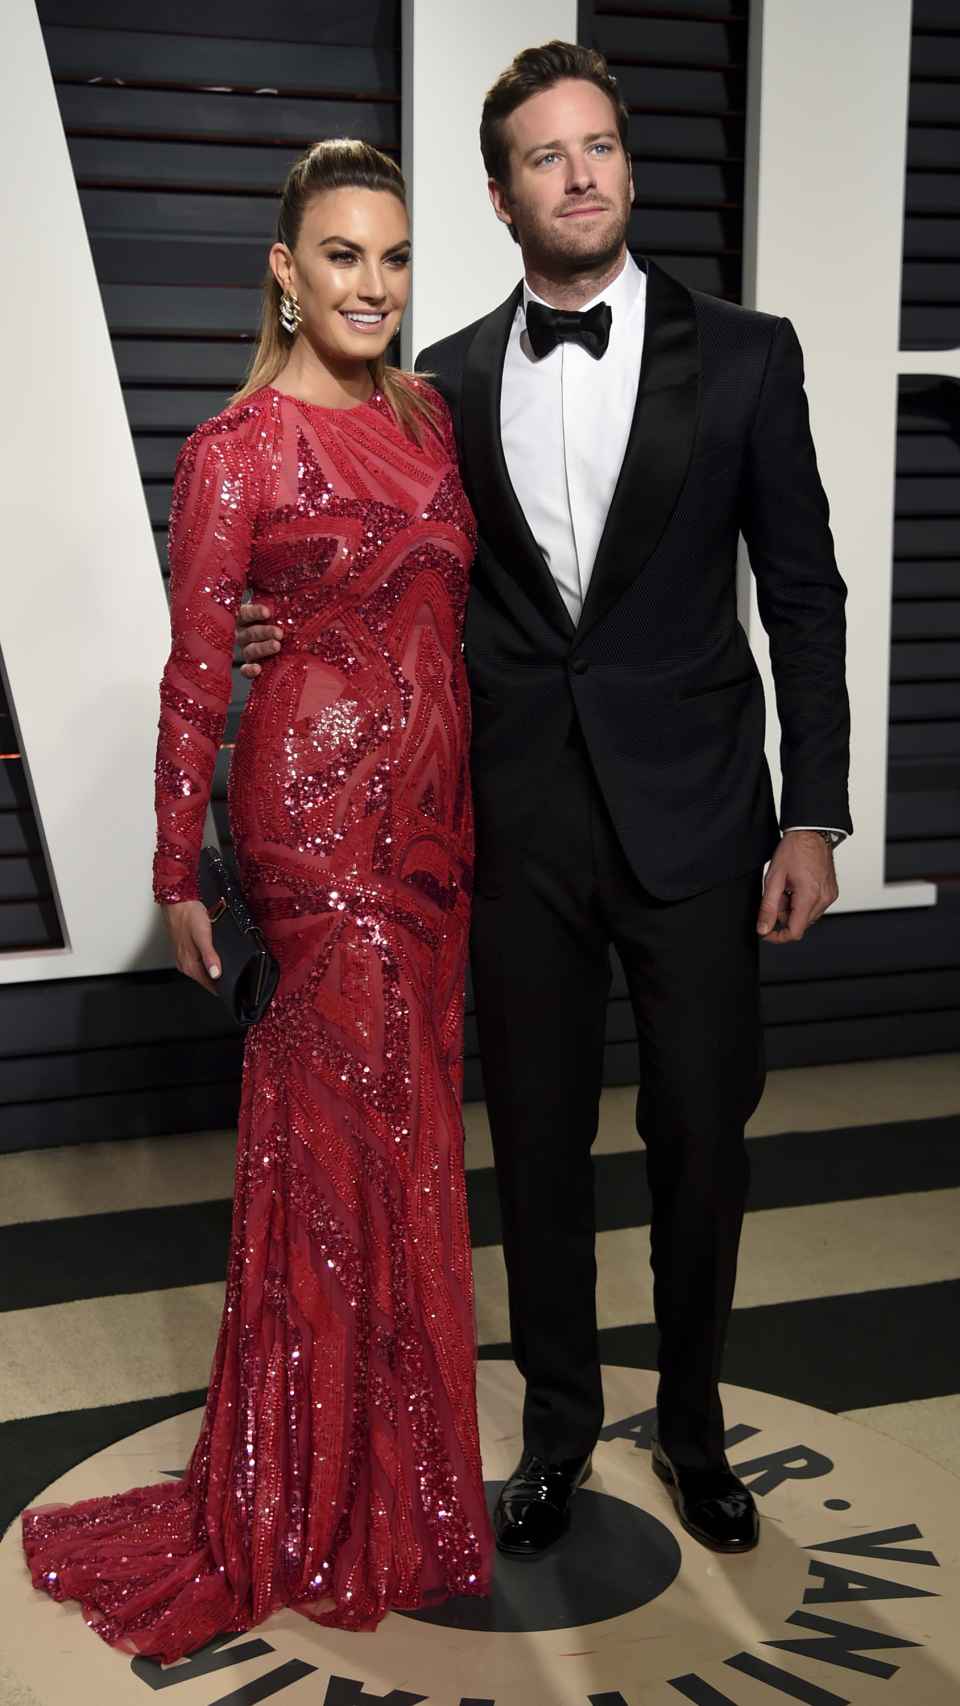 El actor Armie Hammer con quien fuera su mujer y madre de sus dos hijos en la fiesta de después de los premios Oscar en 2017.